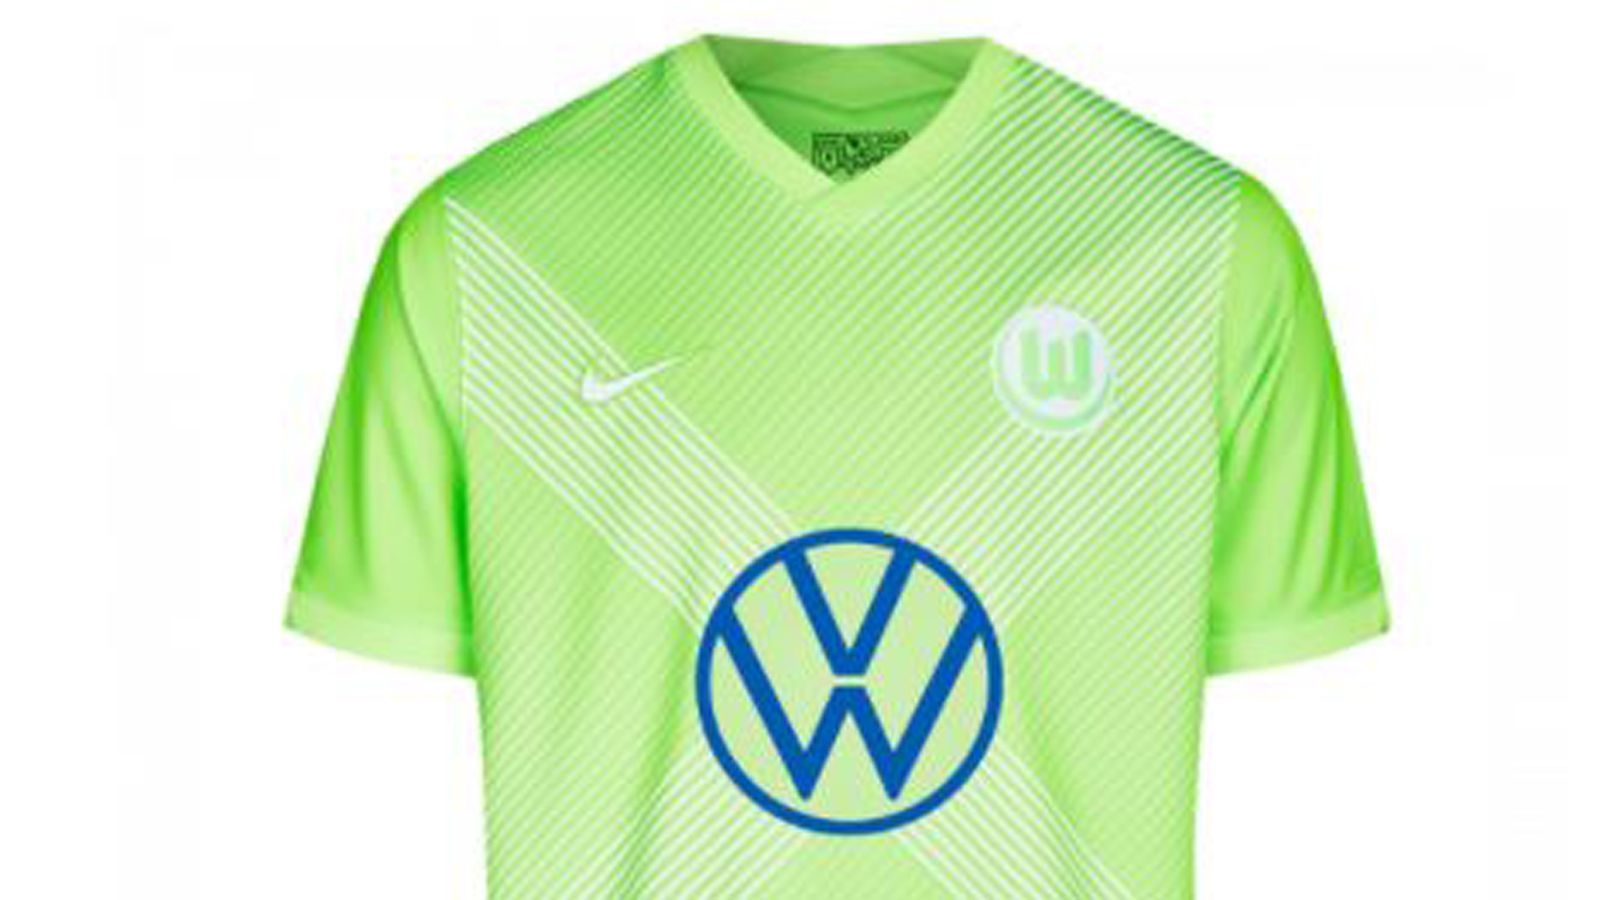 
                <strong>VfL Wolfsburg Heimtrikot 2020/21</strong><br>
                Der VfL Wolfsburg setzt in der Saison 2020/21 auf kräftiges, strahlendes Grün. Wie im Vorjahr ziert das Trikot vorne wieder ein X-Design.
              